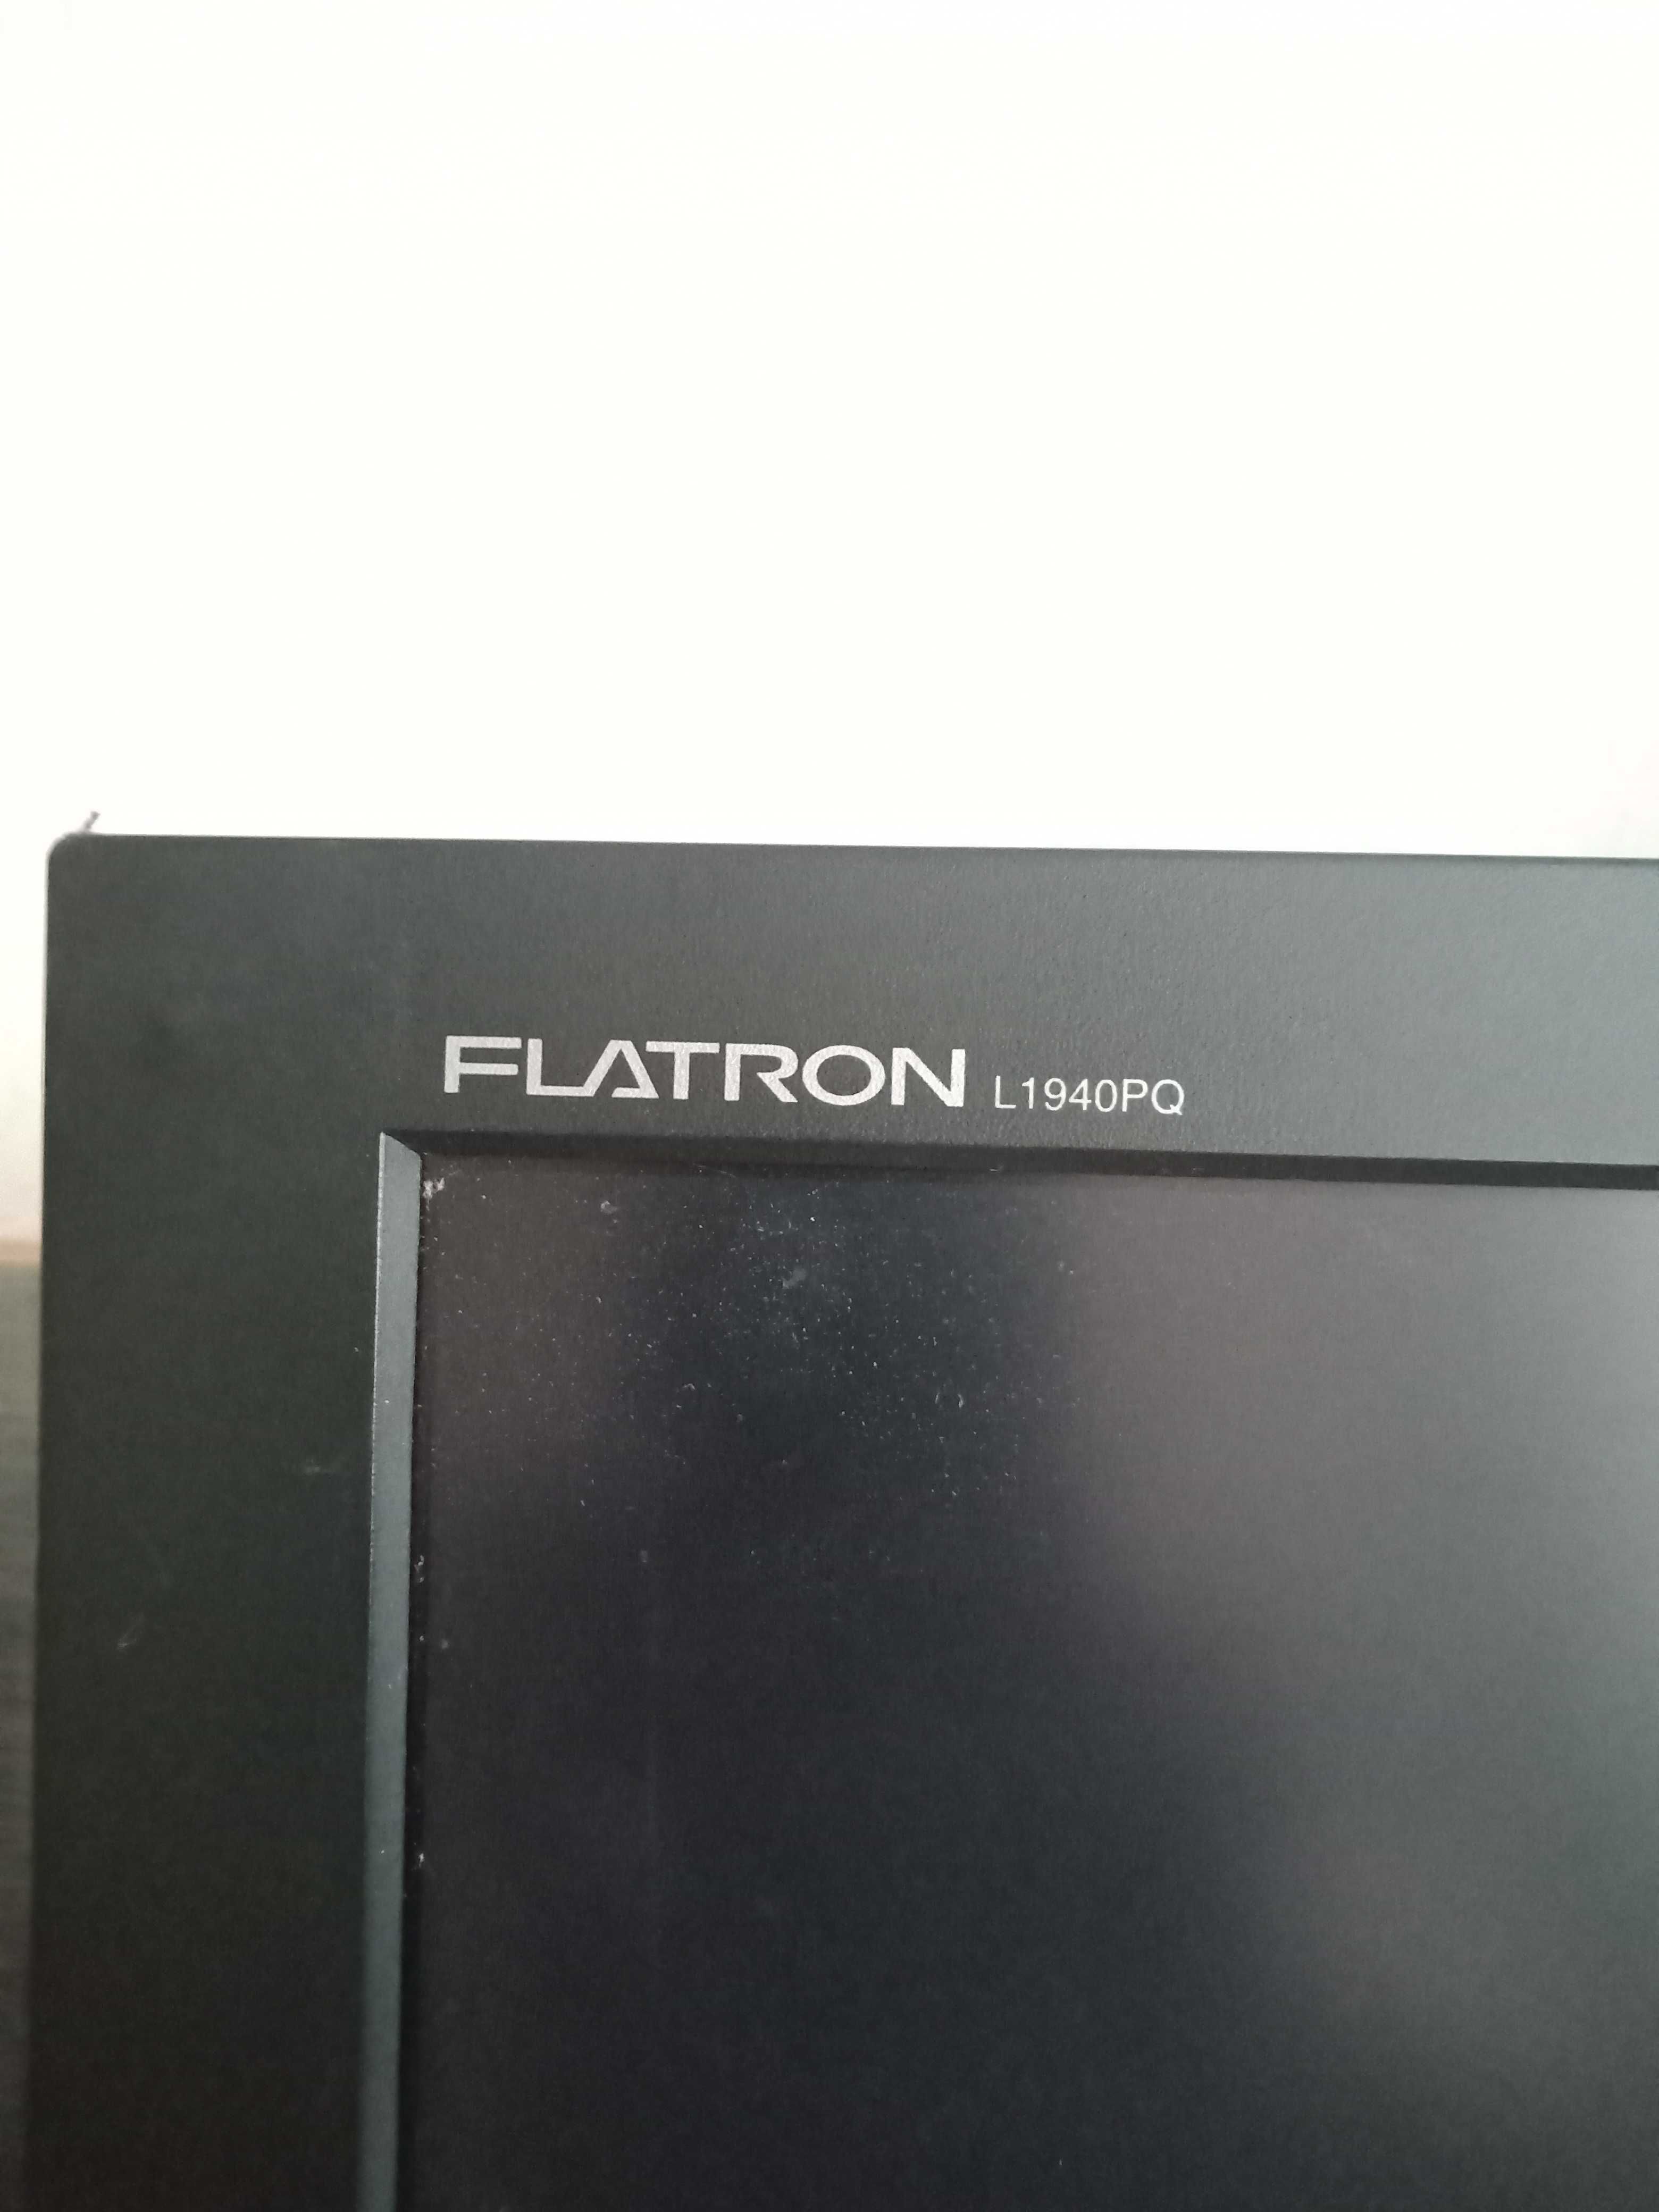 Продам монитор LG Flatron l1940pq, 19 дюймов, б/у